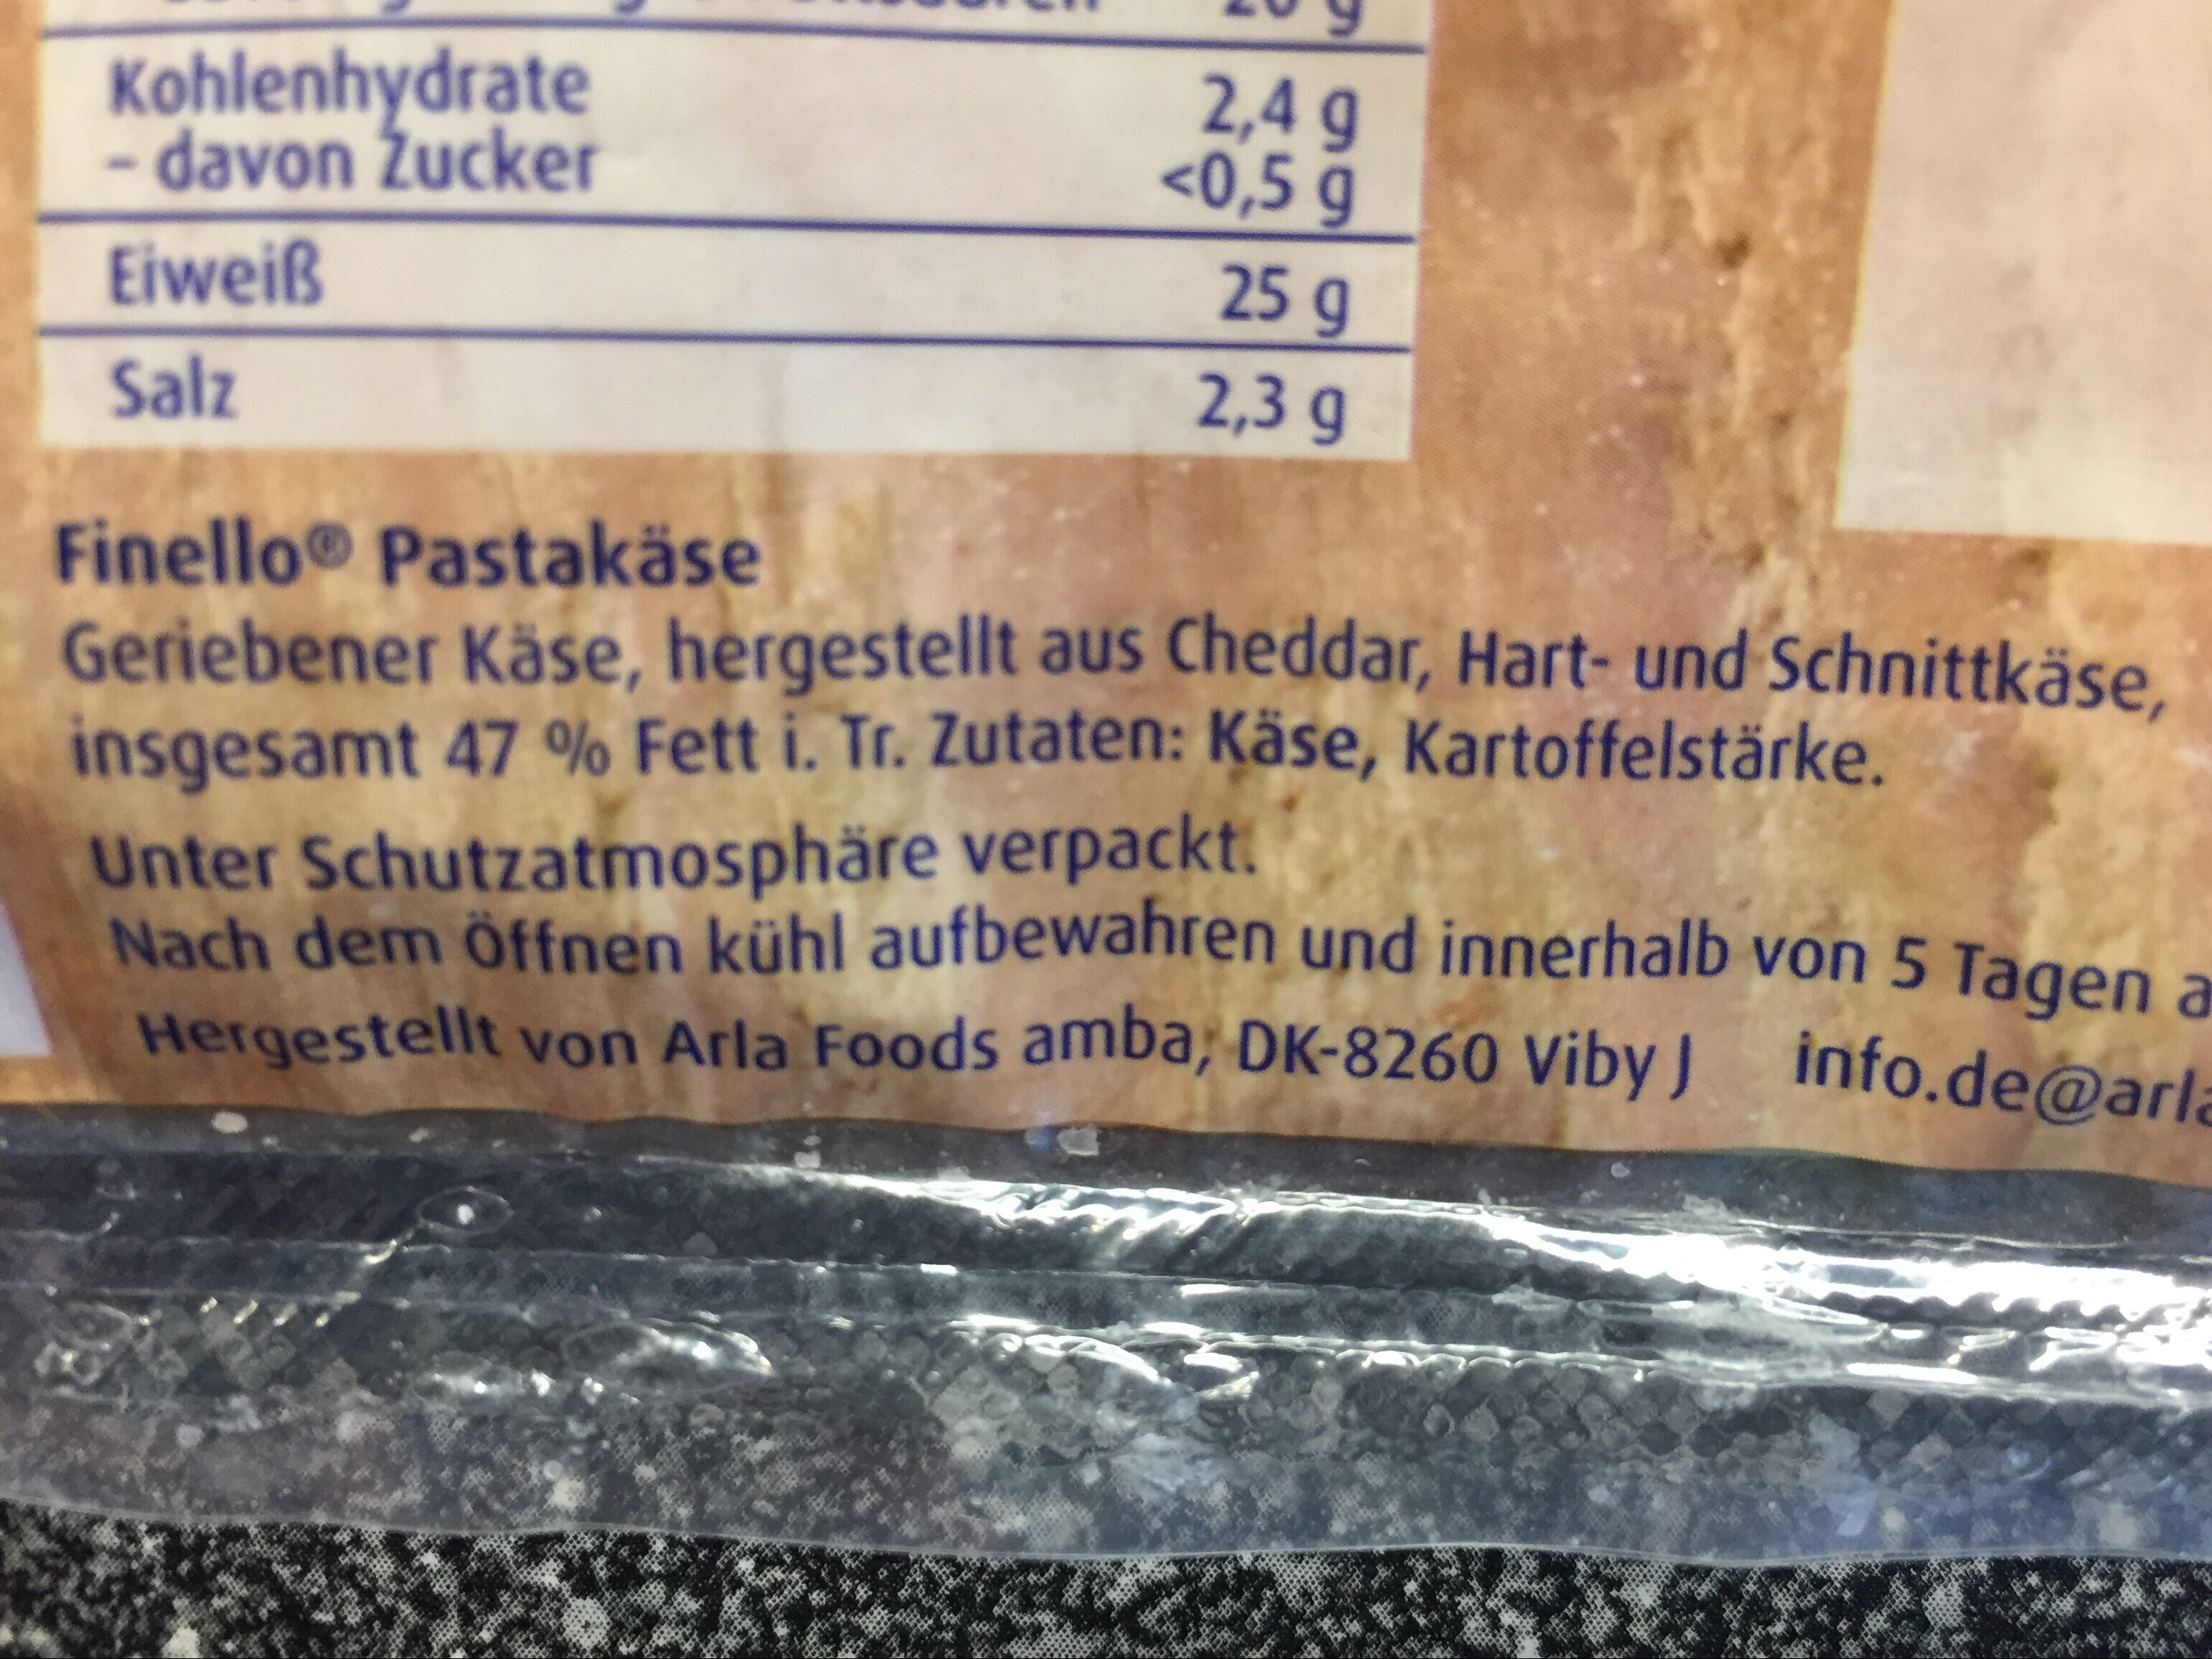 Finello Pastakäse - Ingredients